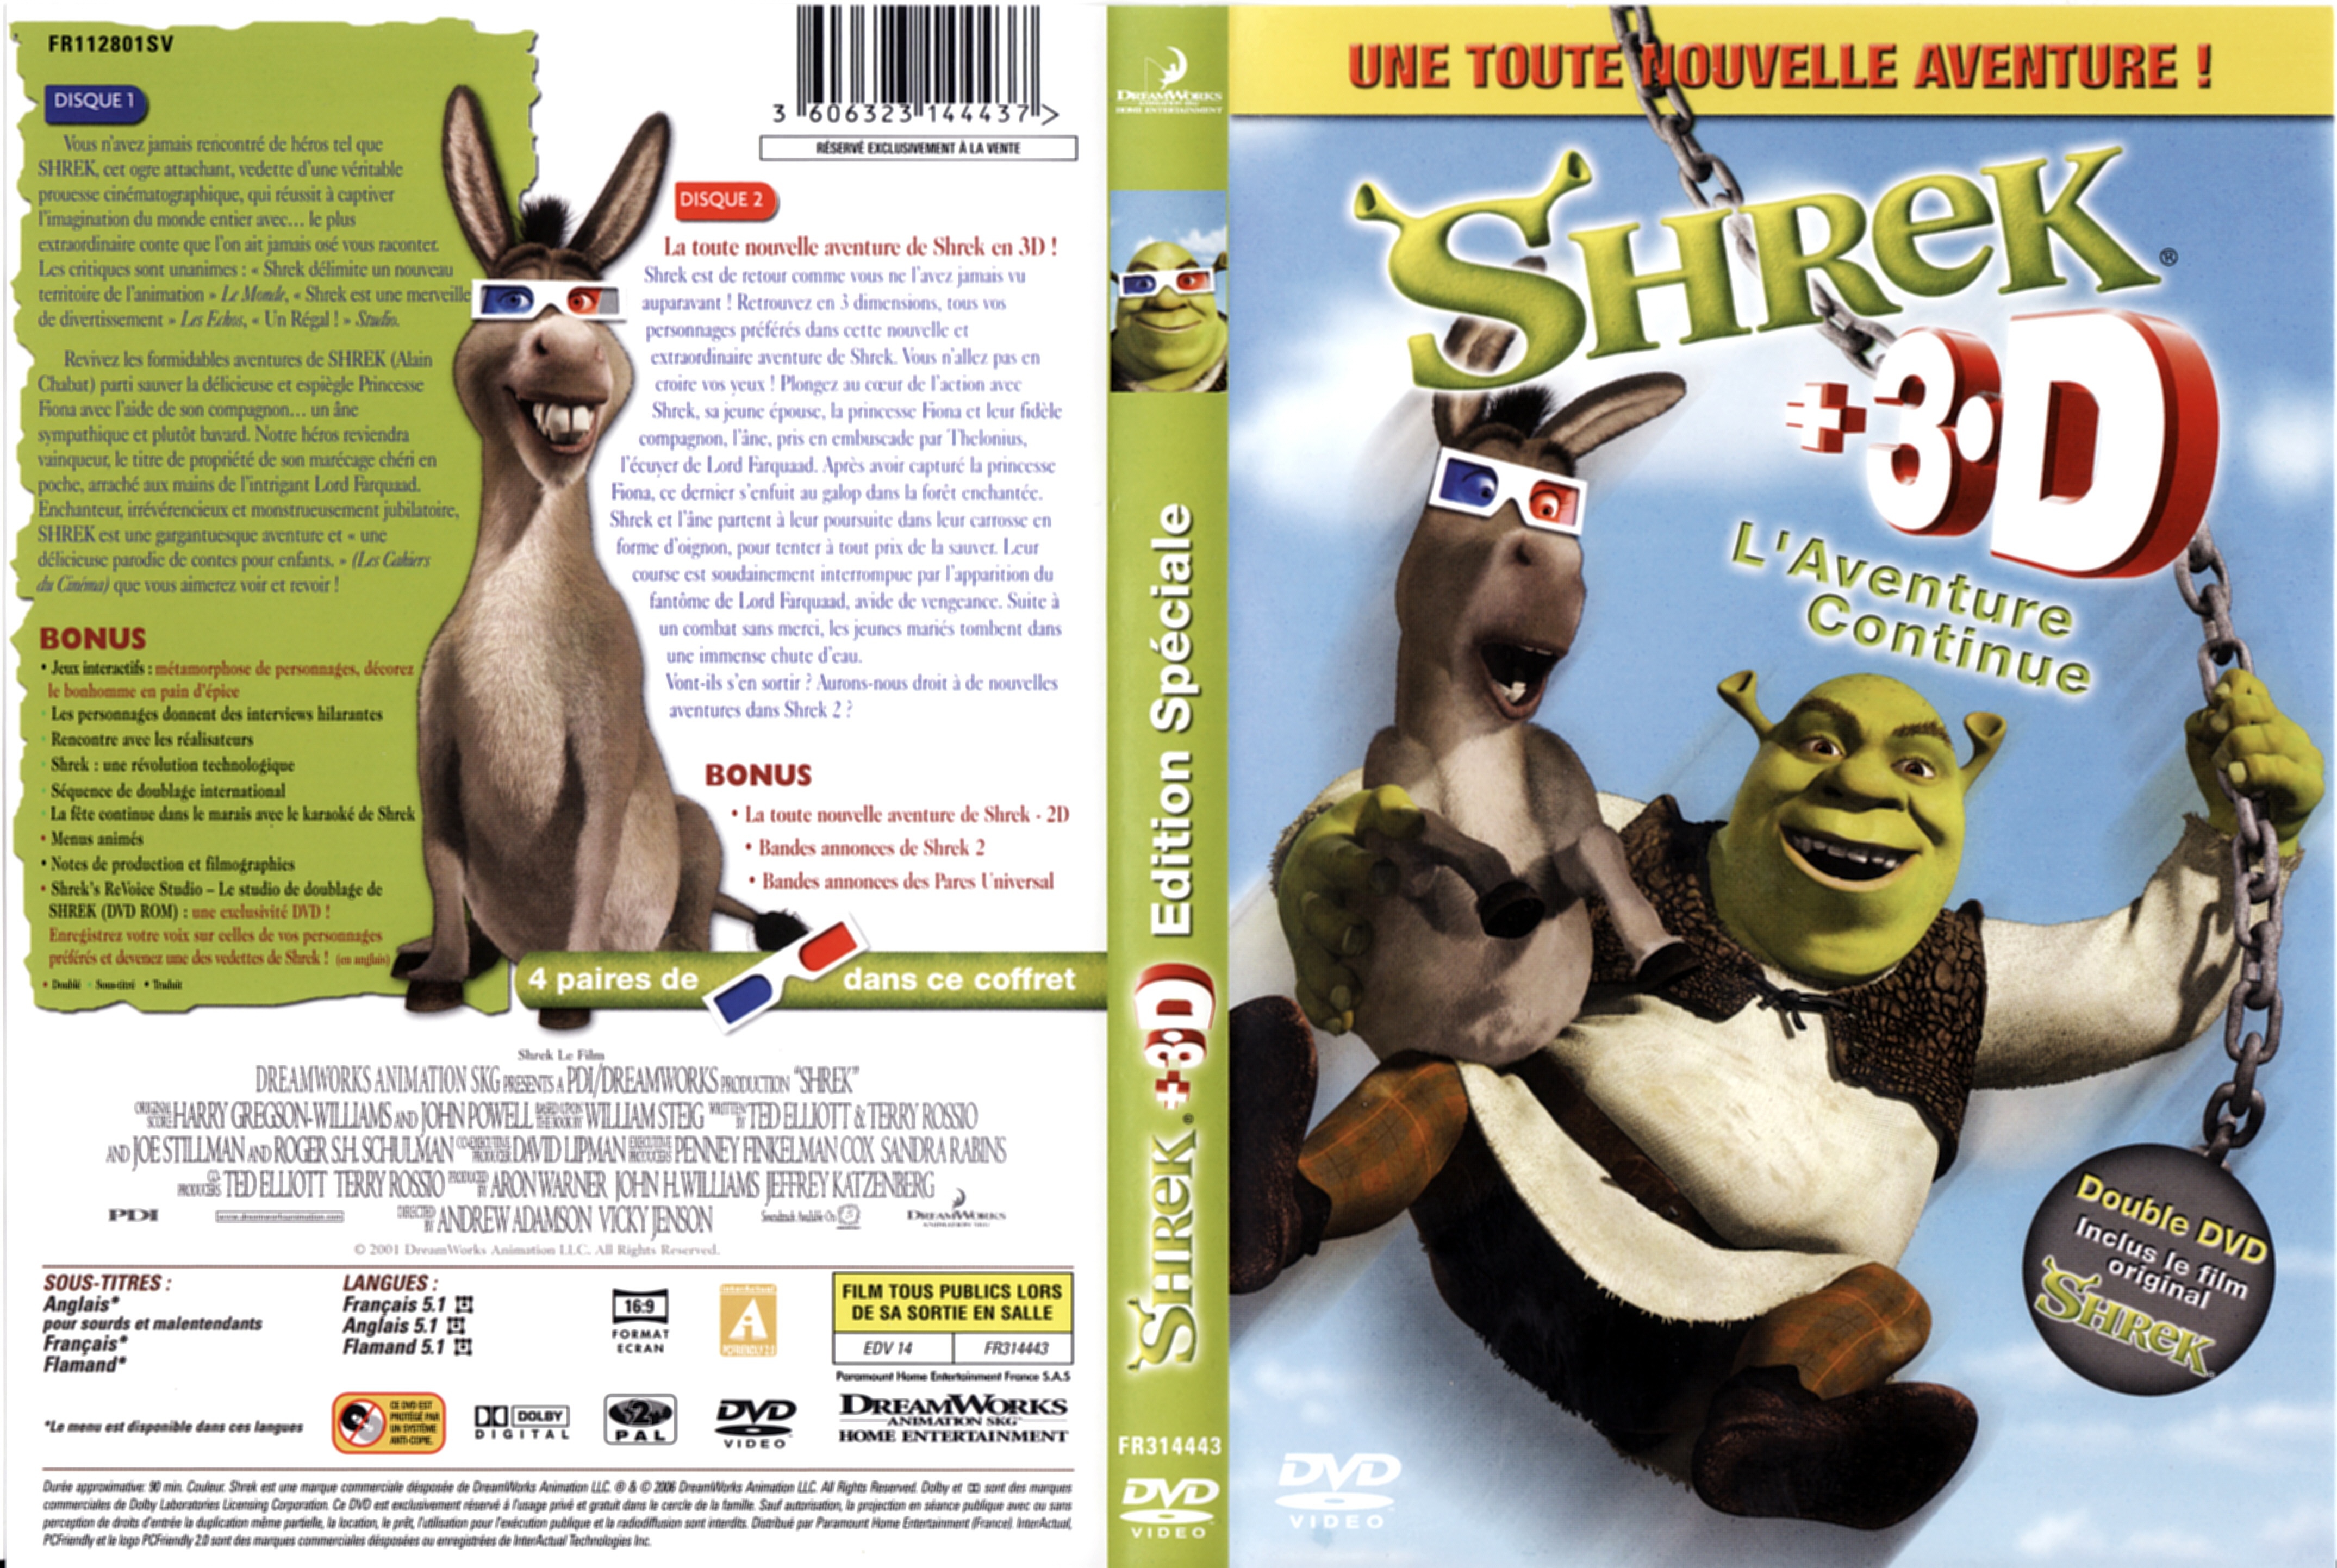 Jaquette DVD Shrek 3D v2